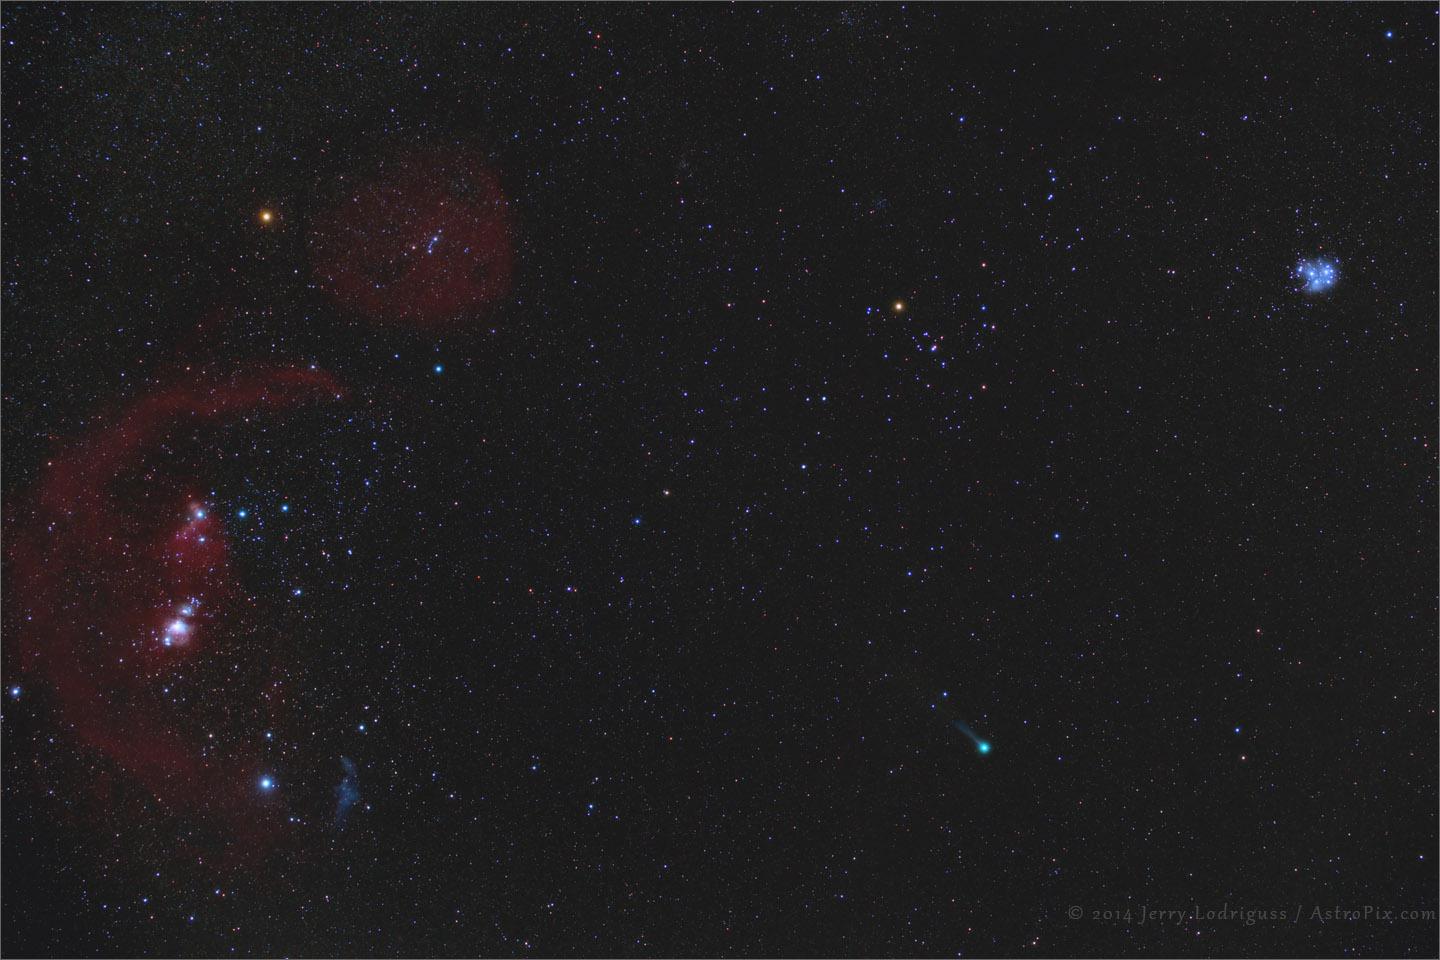 Comet C/2014 Q2 Lovejoy